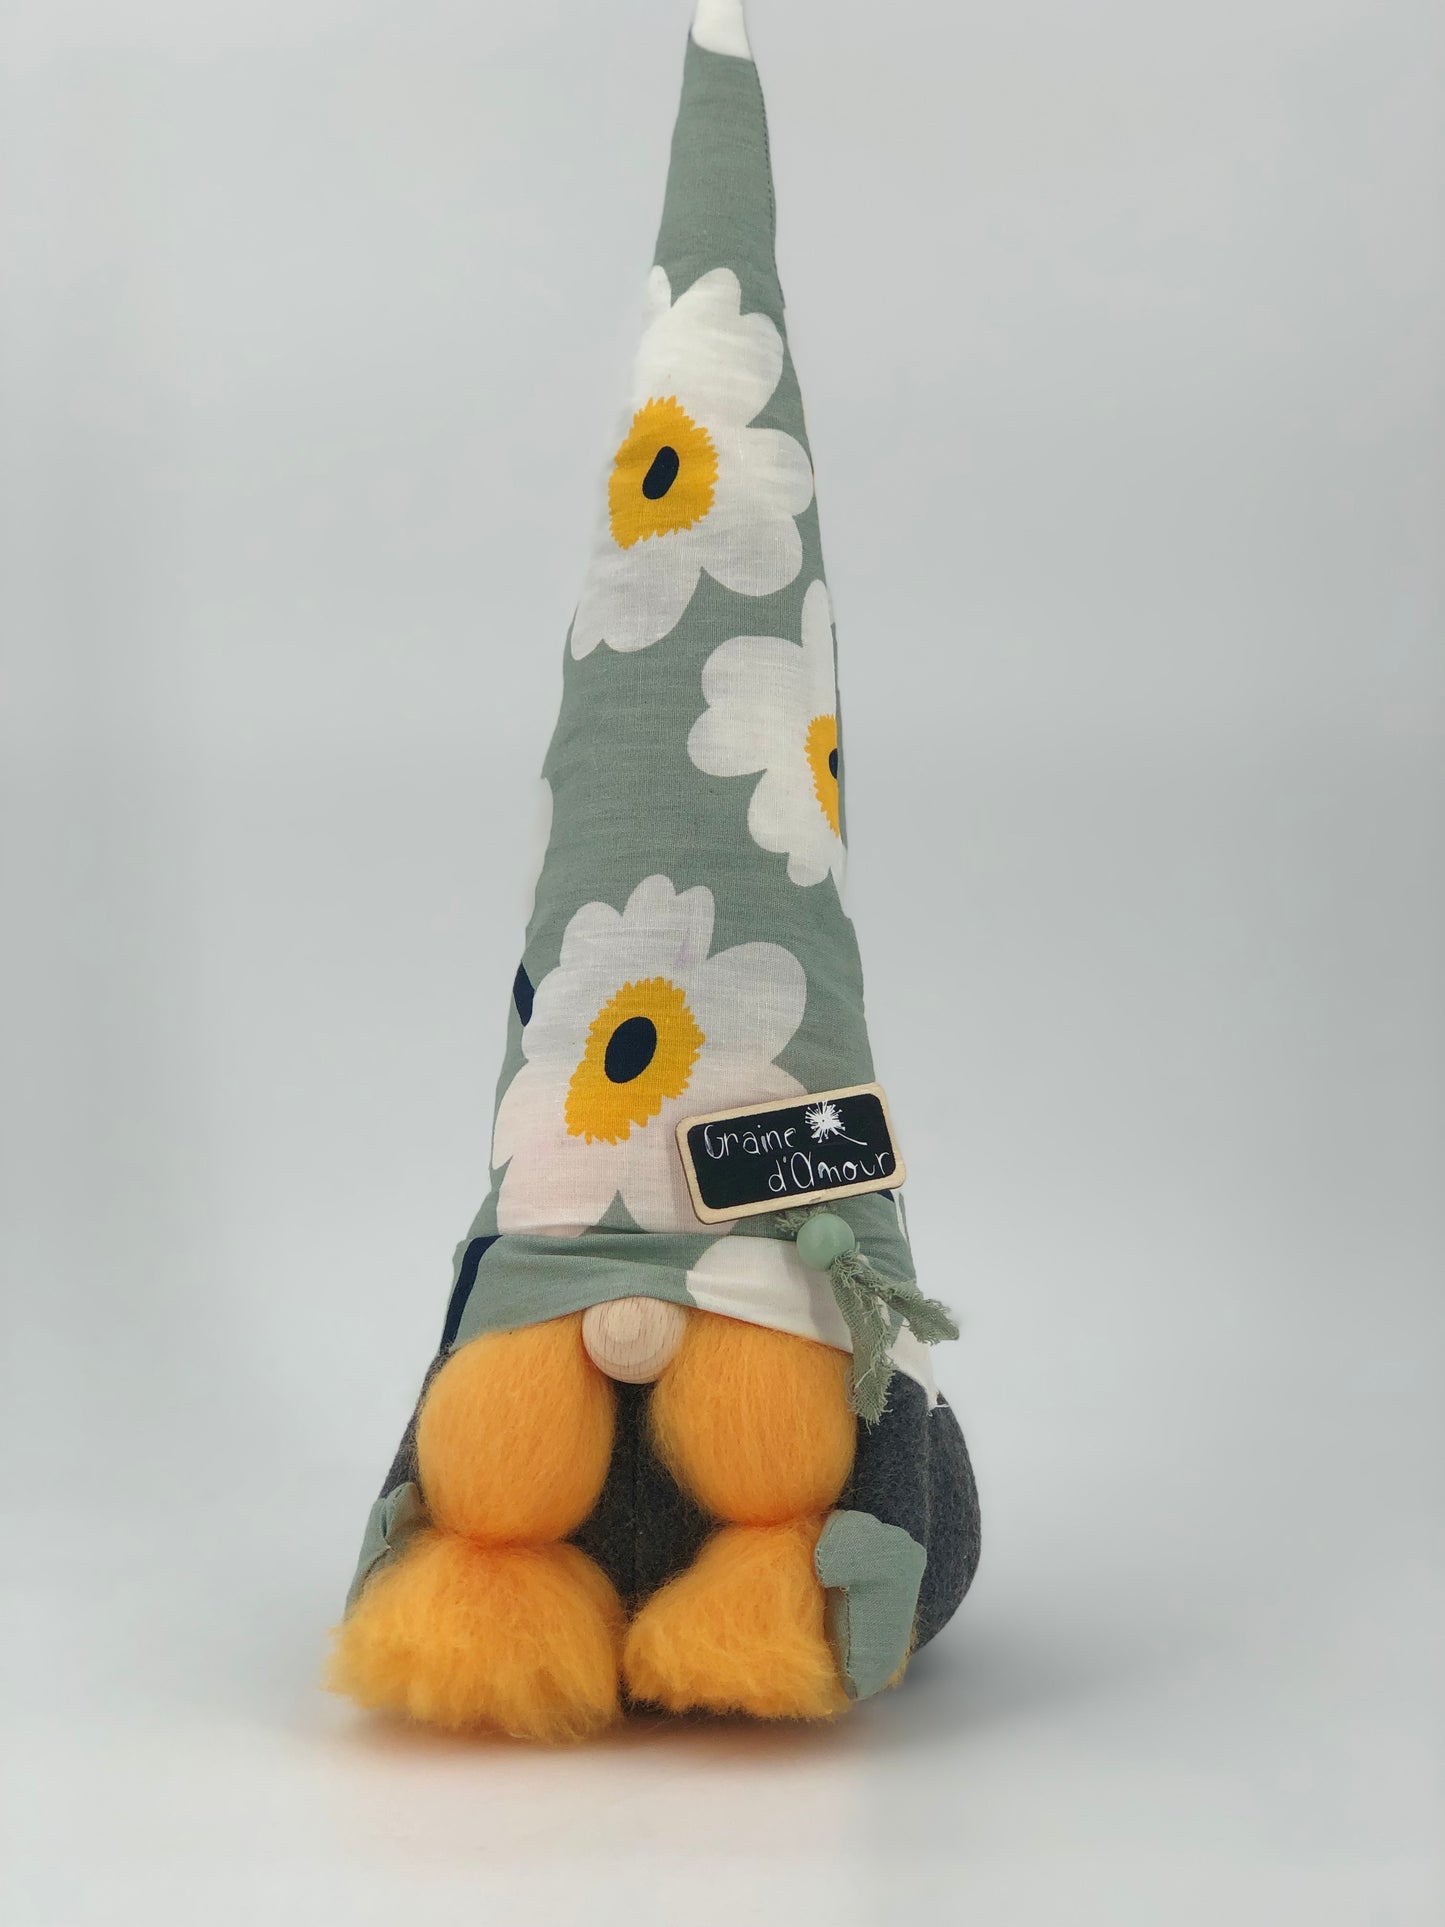 Gnome "graine d'amour" - gnome de la Saint-Valentin- collection 2021